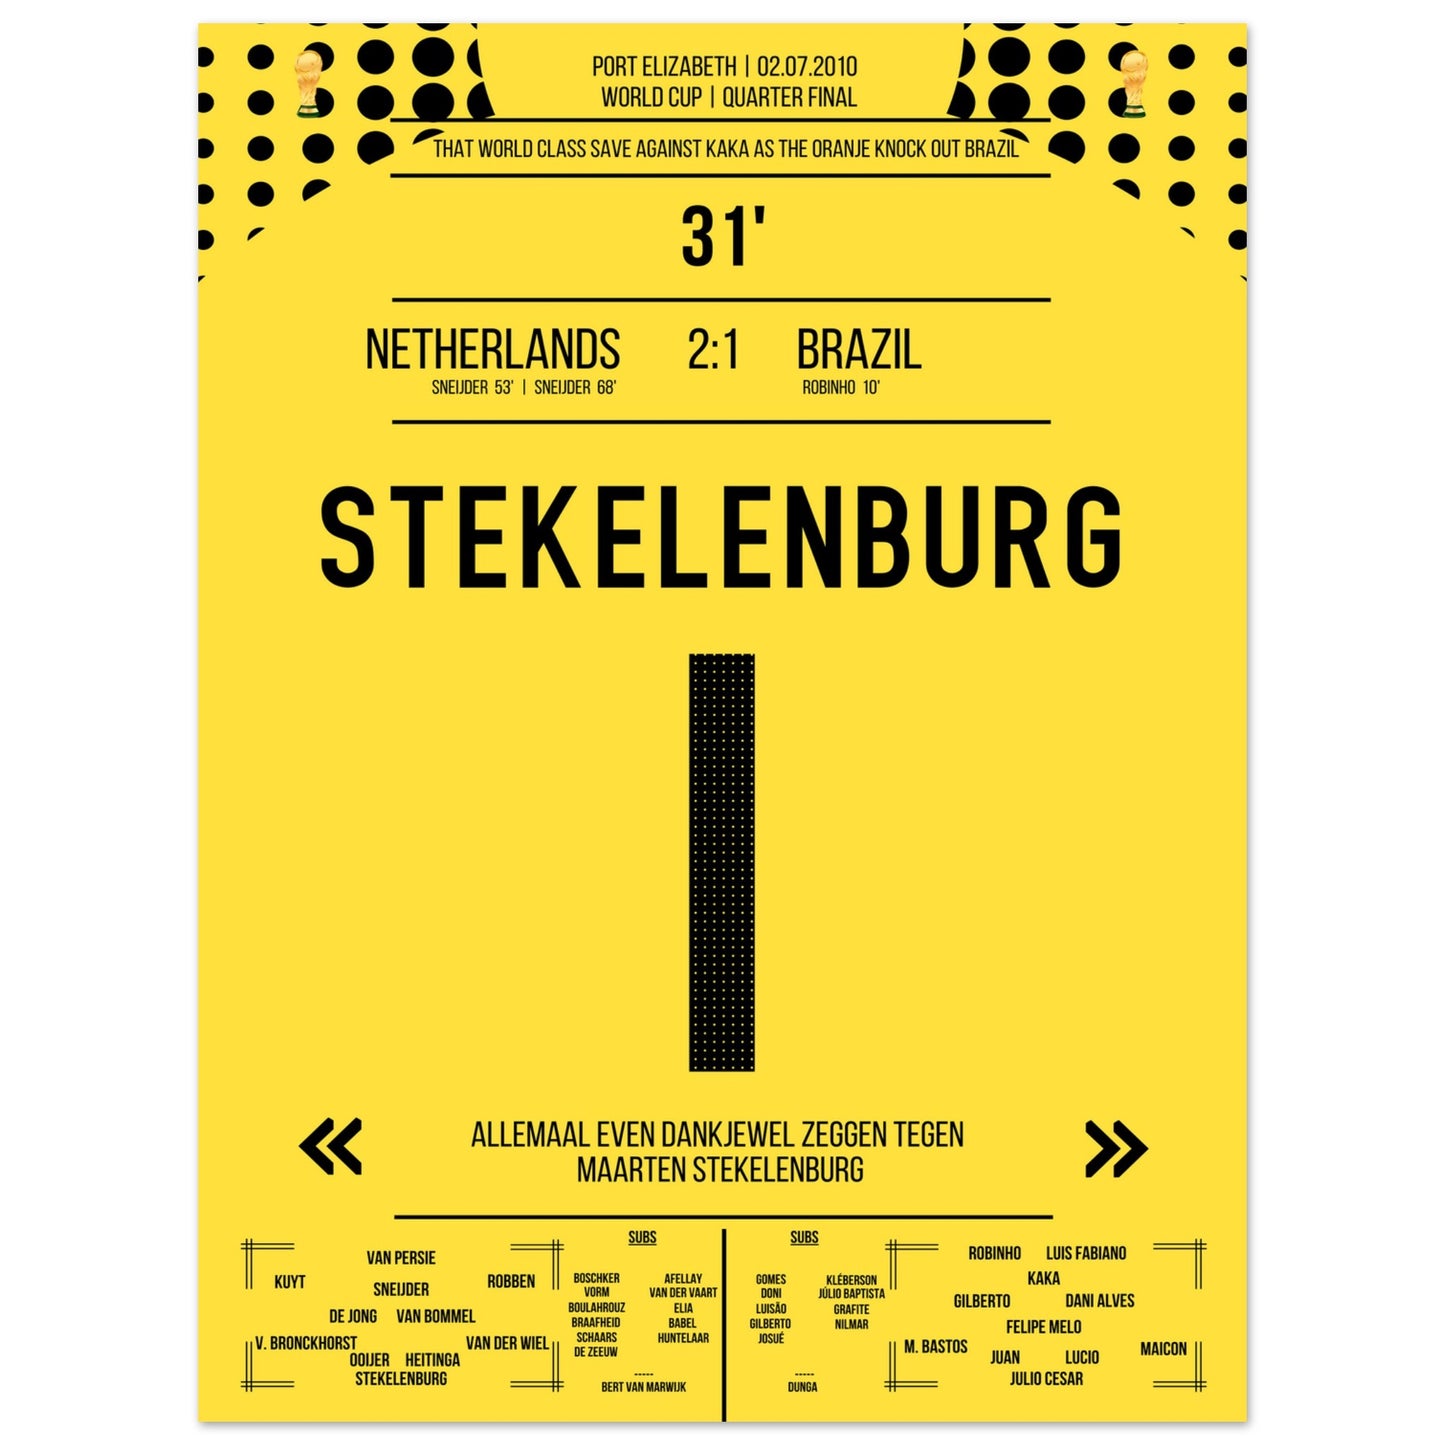 Stekelenburg's Weltklasse Aktion gegen Kaka bei der WM 2010 Kommentar-Version 30x40-cm-12x16-Ohne-Rahmen